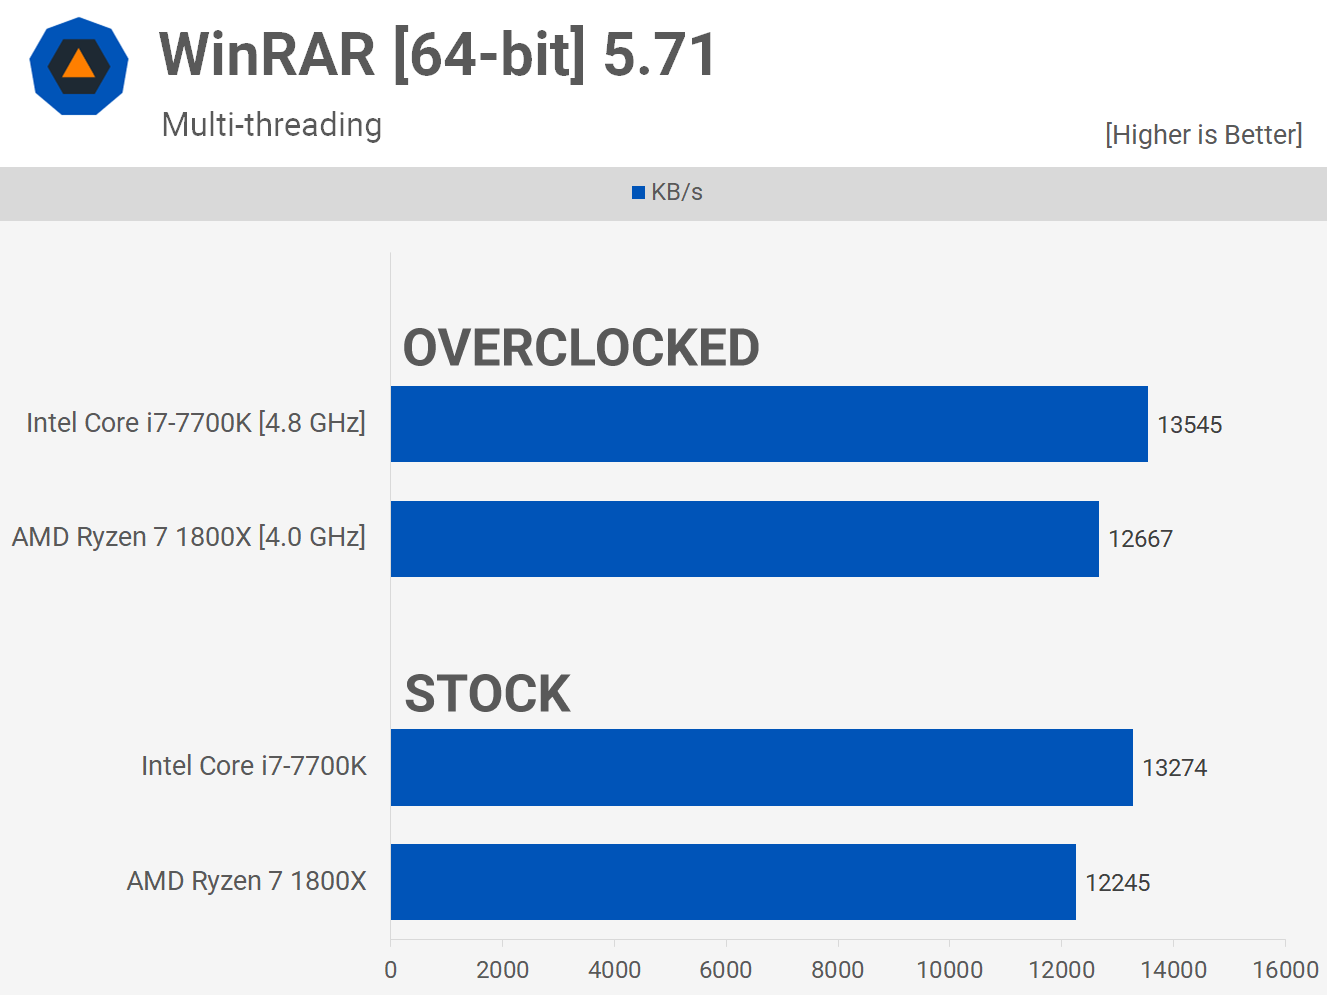 1658426419 526 Dos anos despues AMD Ryzen 7 1800X vs Intel Core